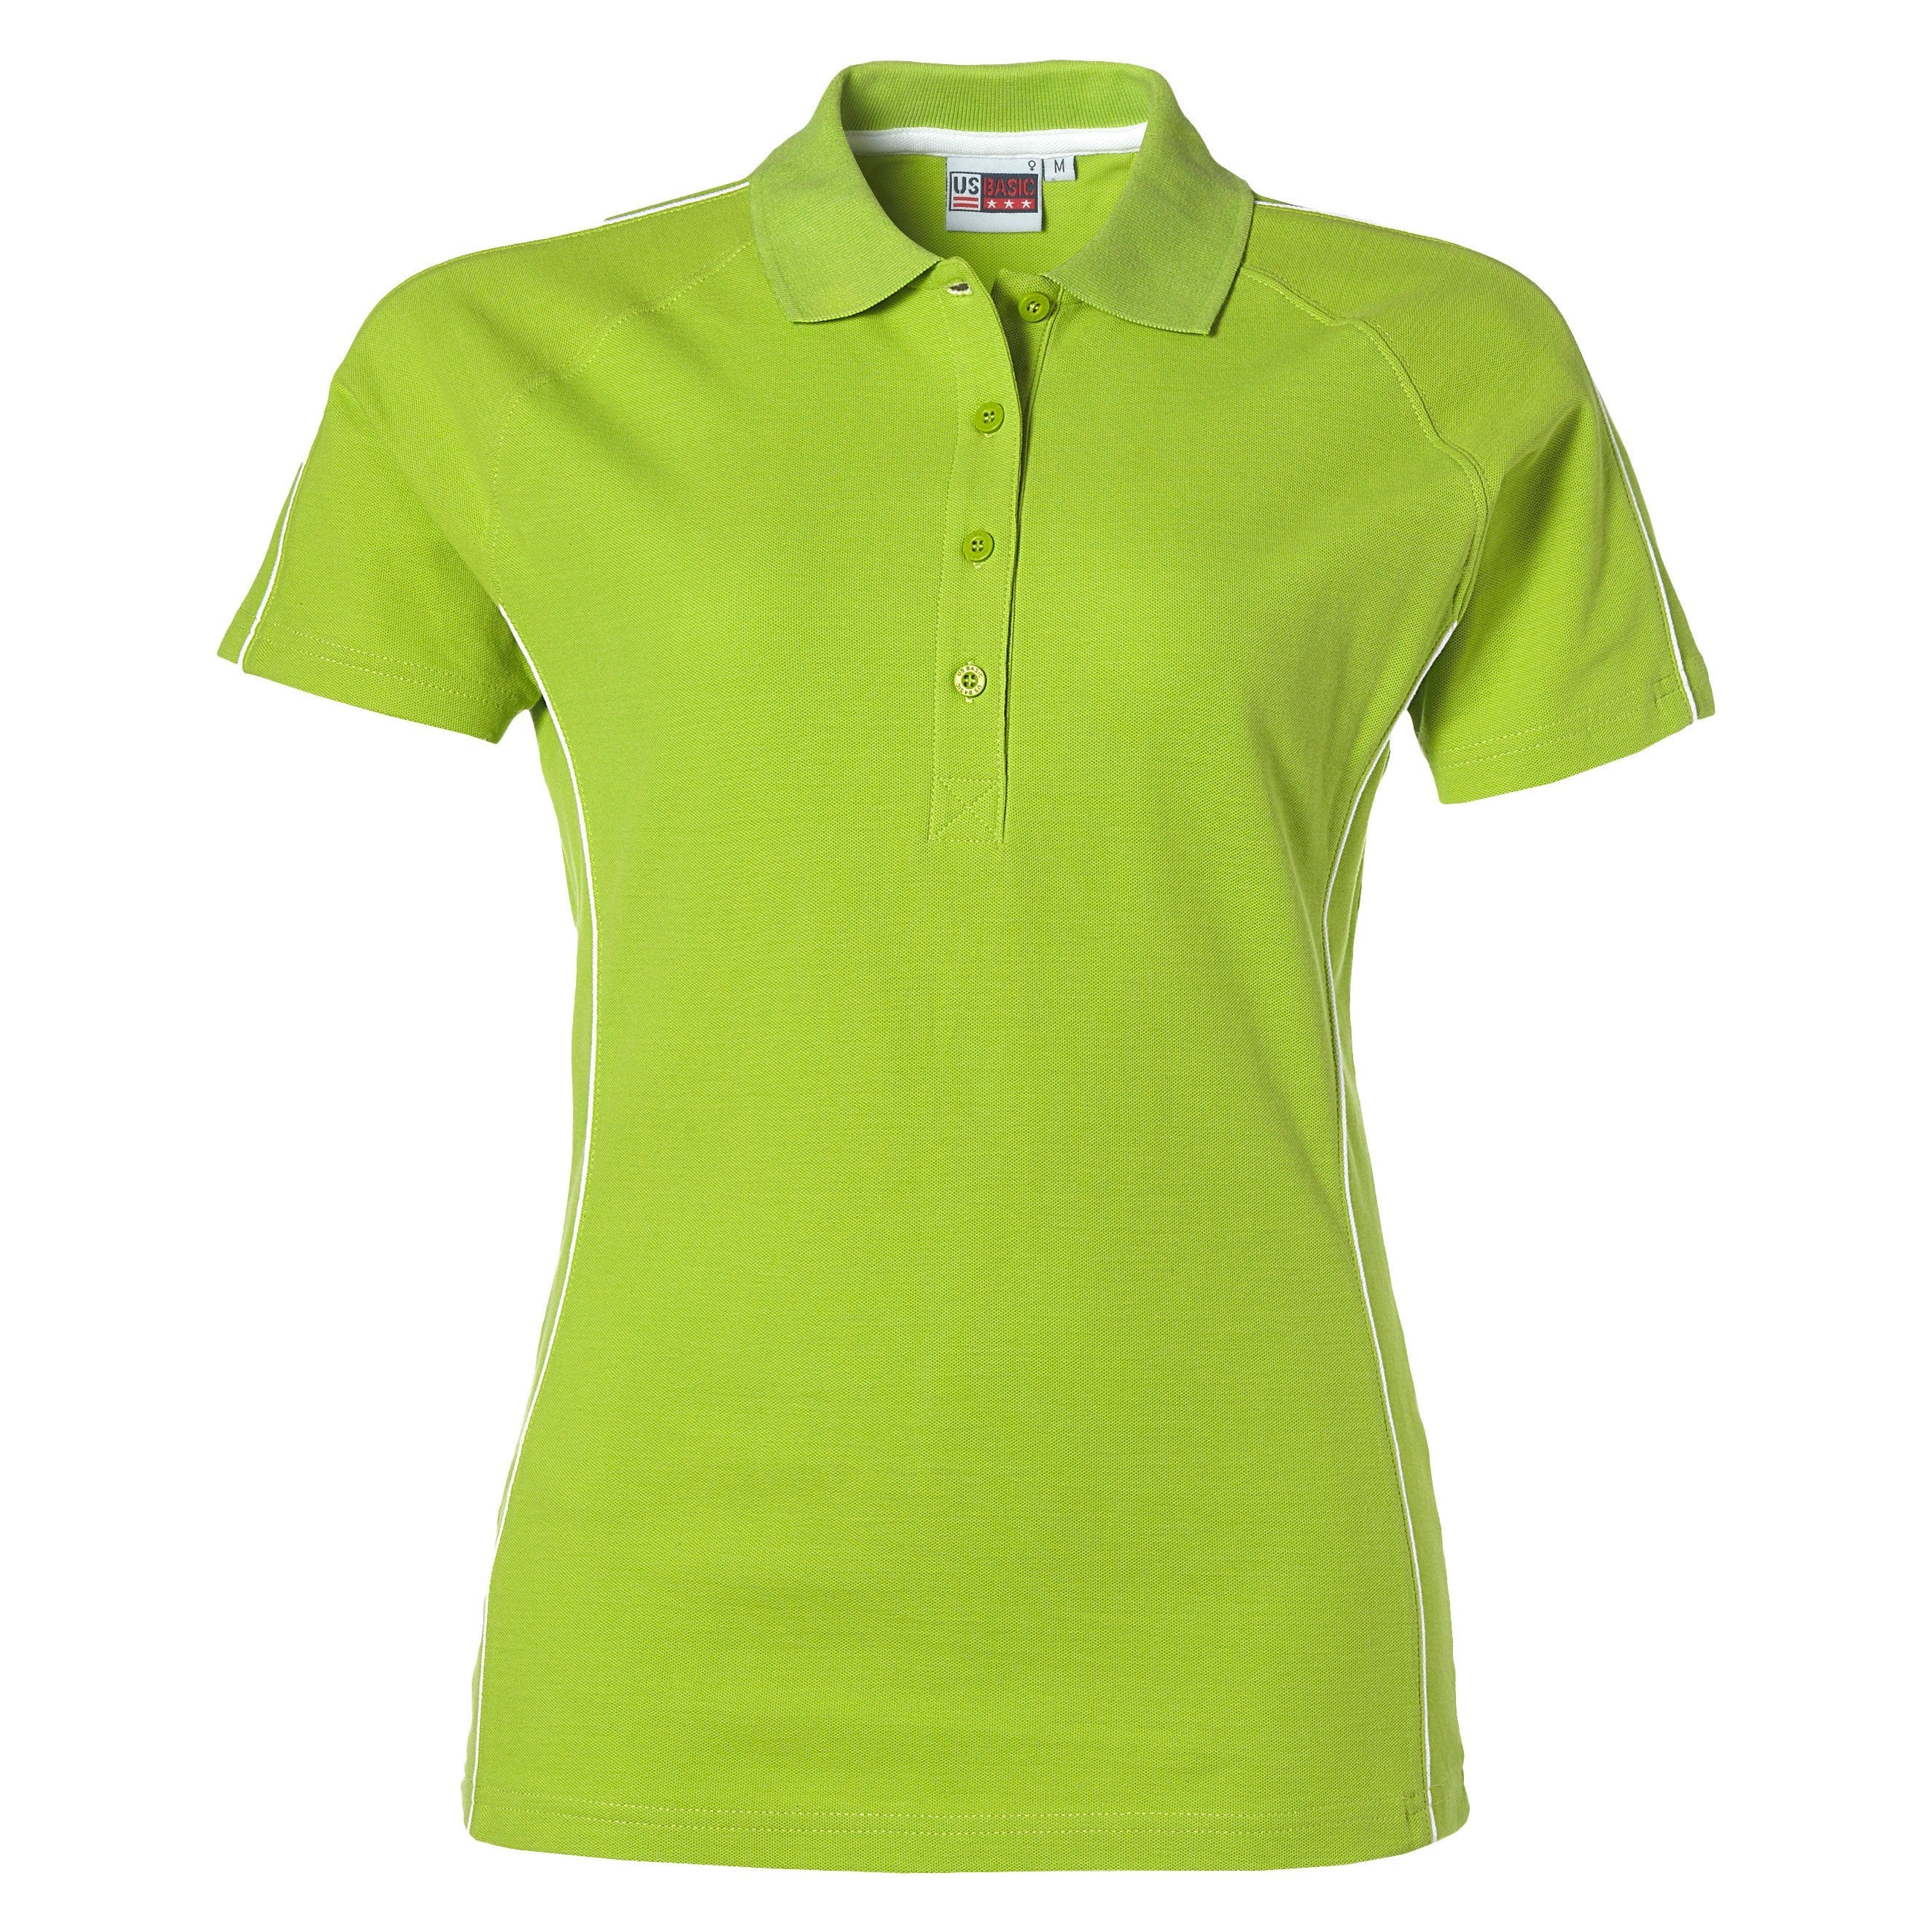 Ladies Pontiac Golf Shirt - Navy Only-2XL-Lime-L